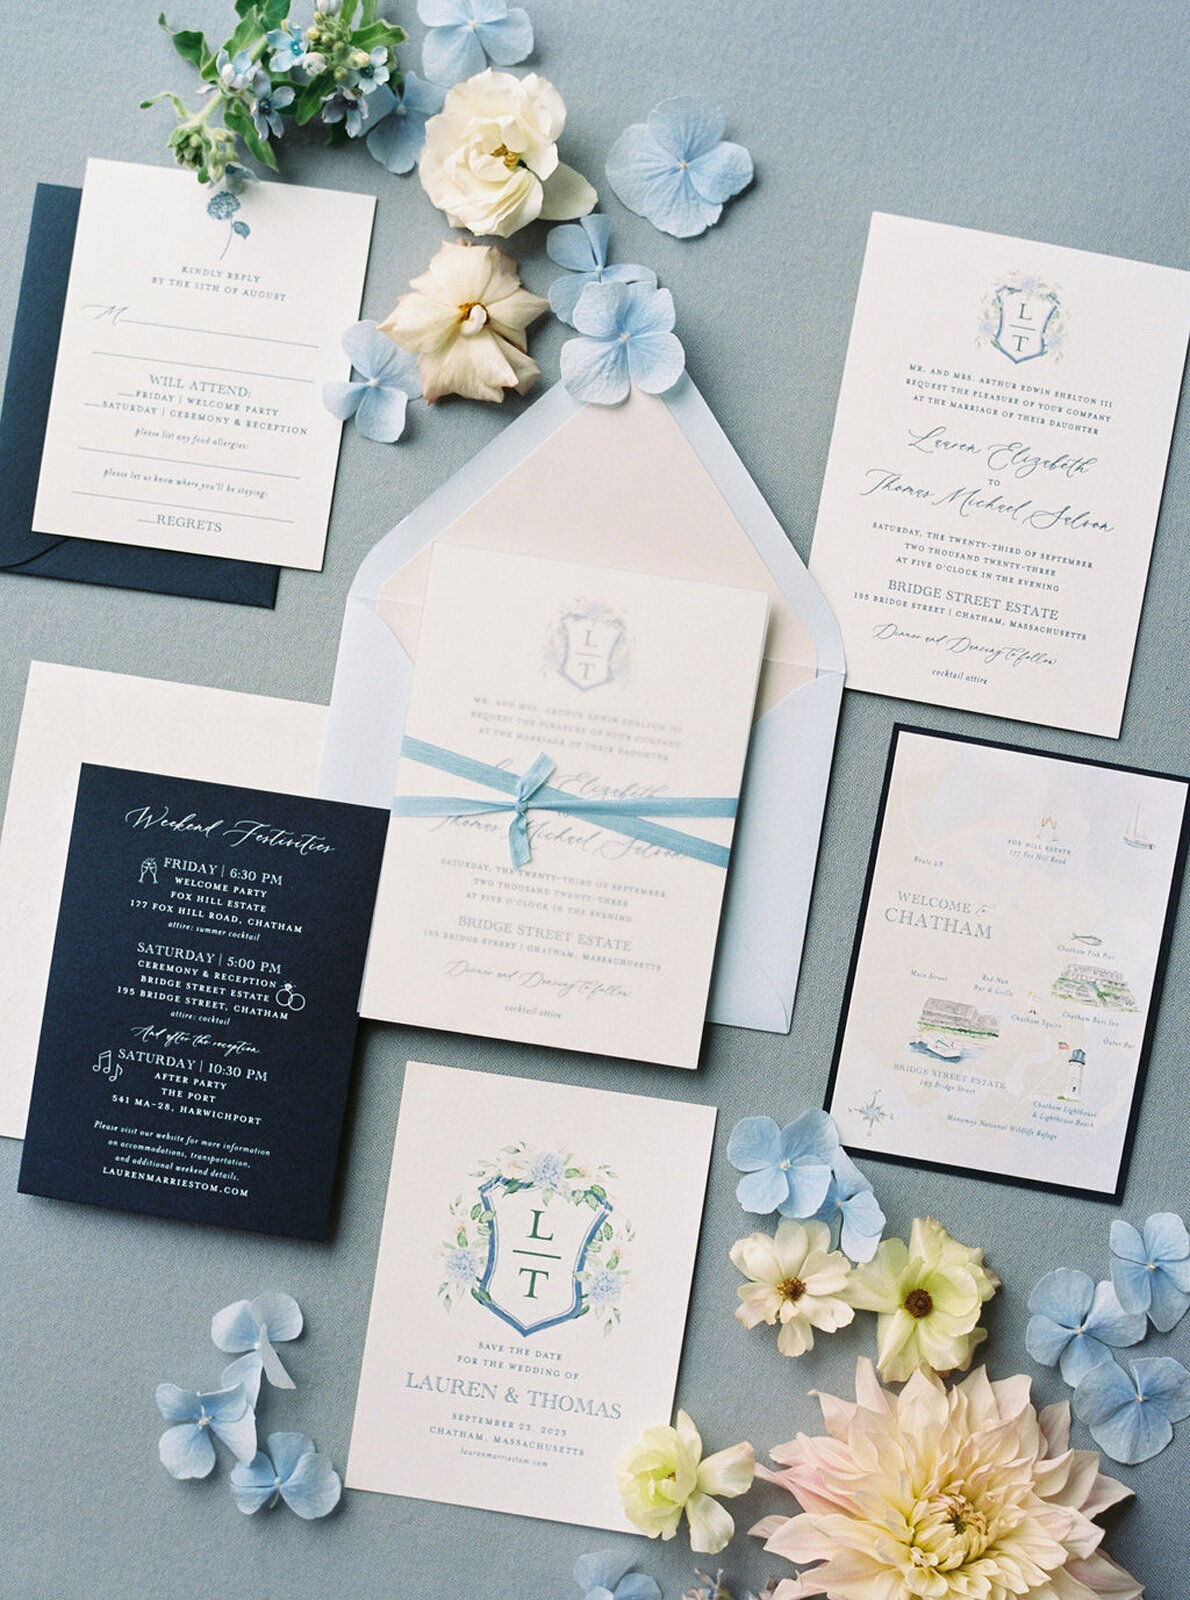 Kate_Murtaugh_Events_Cape_Cod_tented_wedding_invitation_suite_2